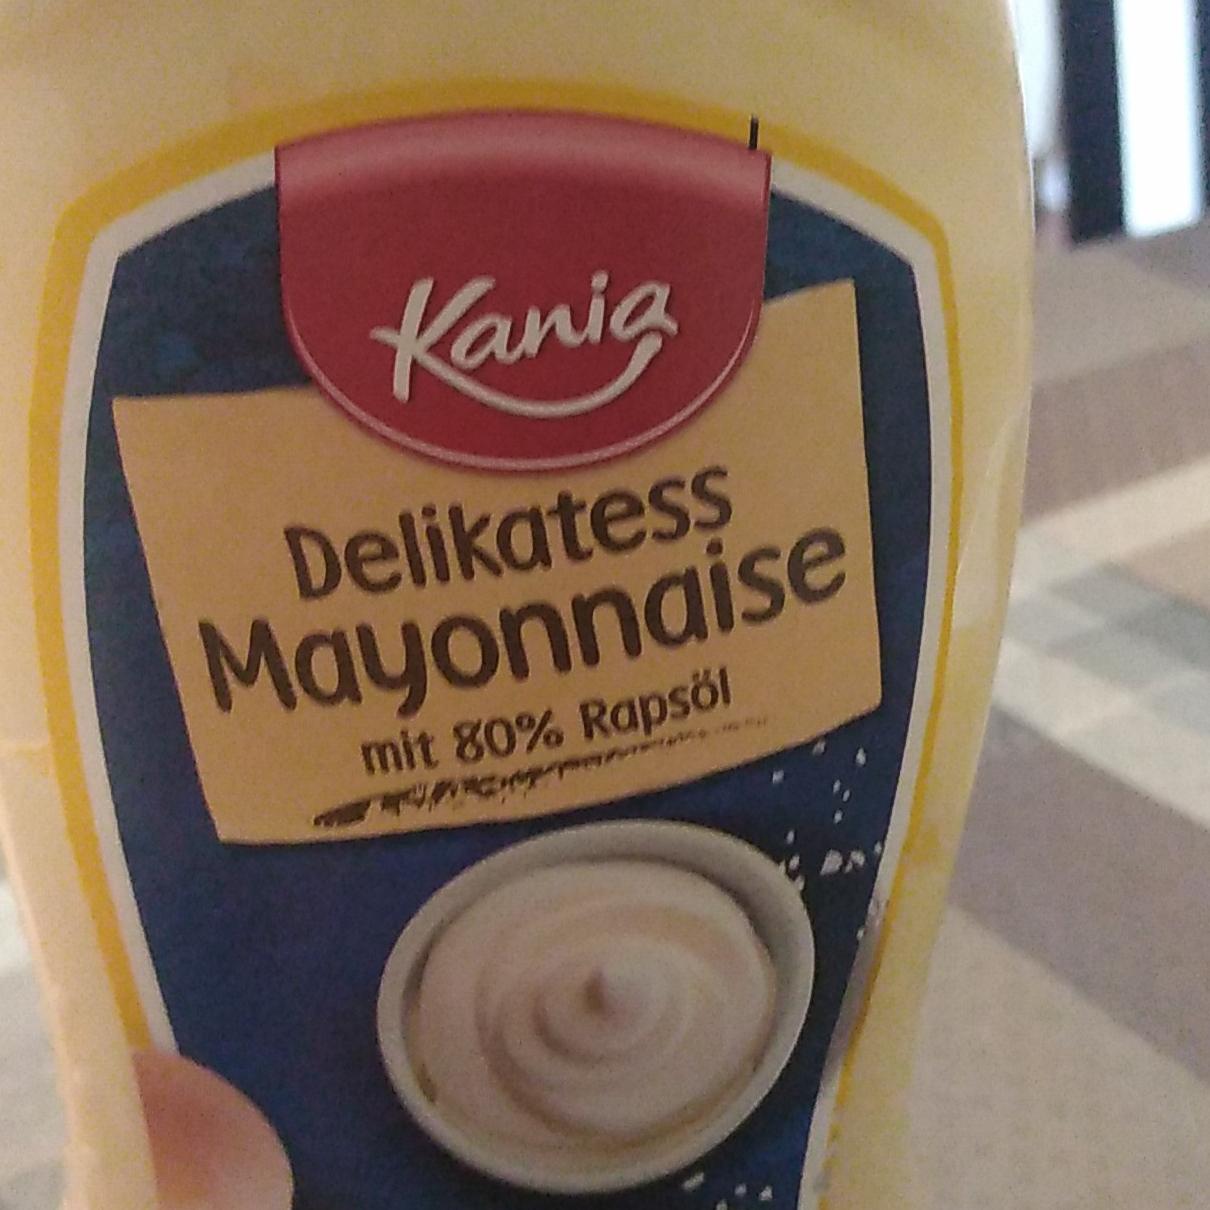 kJ a kalorie, mayonaise nutriční Delikatess hodnoty Kania -